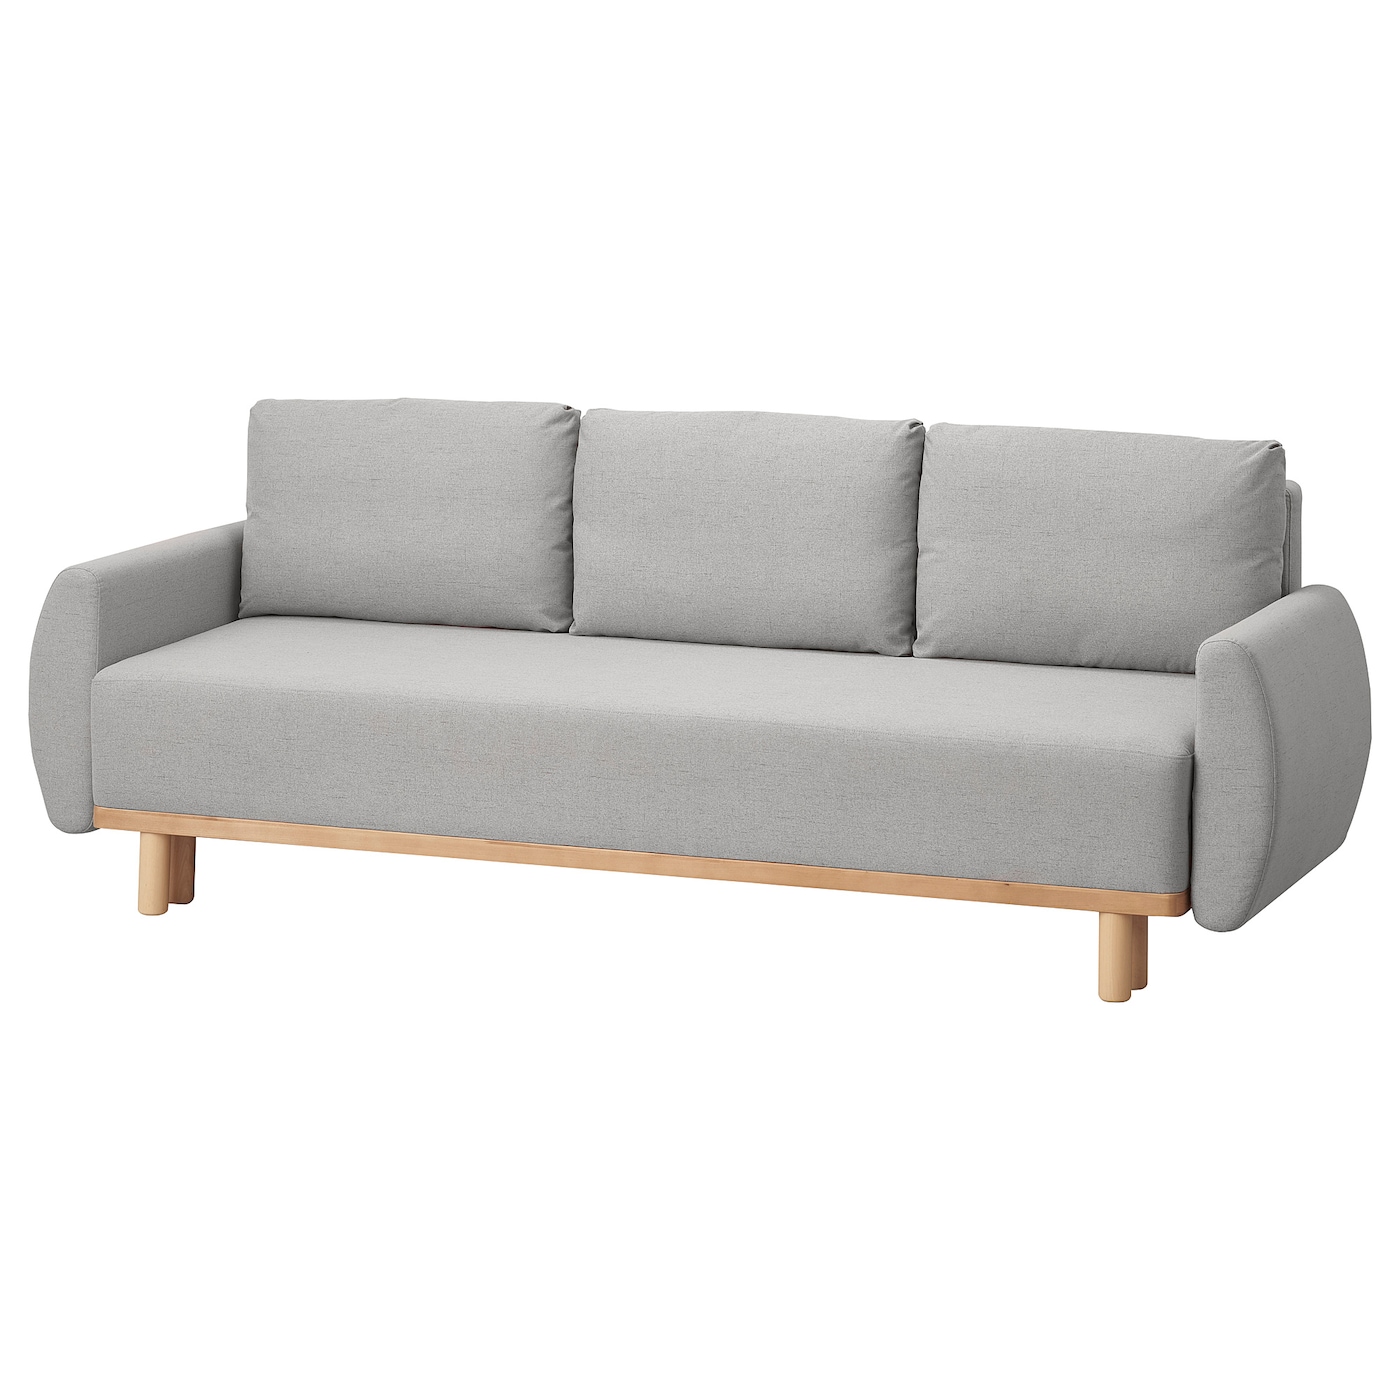 3-местный диван-кровать - IKEA GRUNNARP, 92x232см, светло-серый, ГРУННАРП ИКЕА